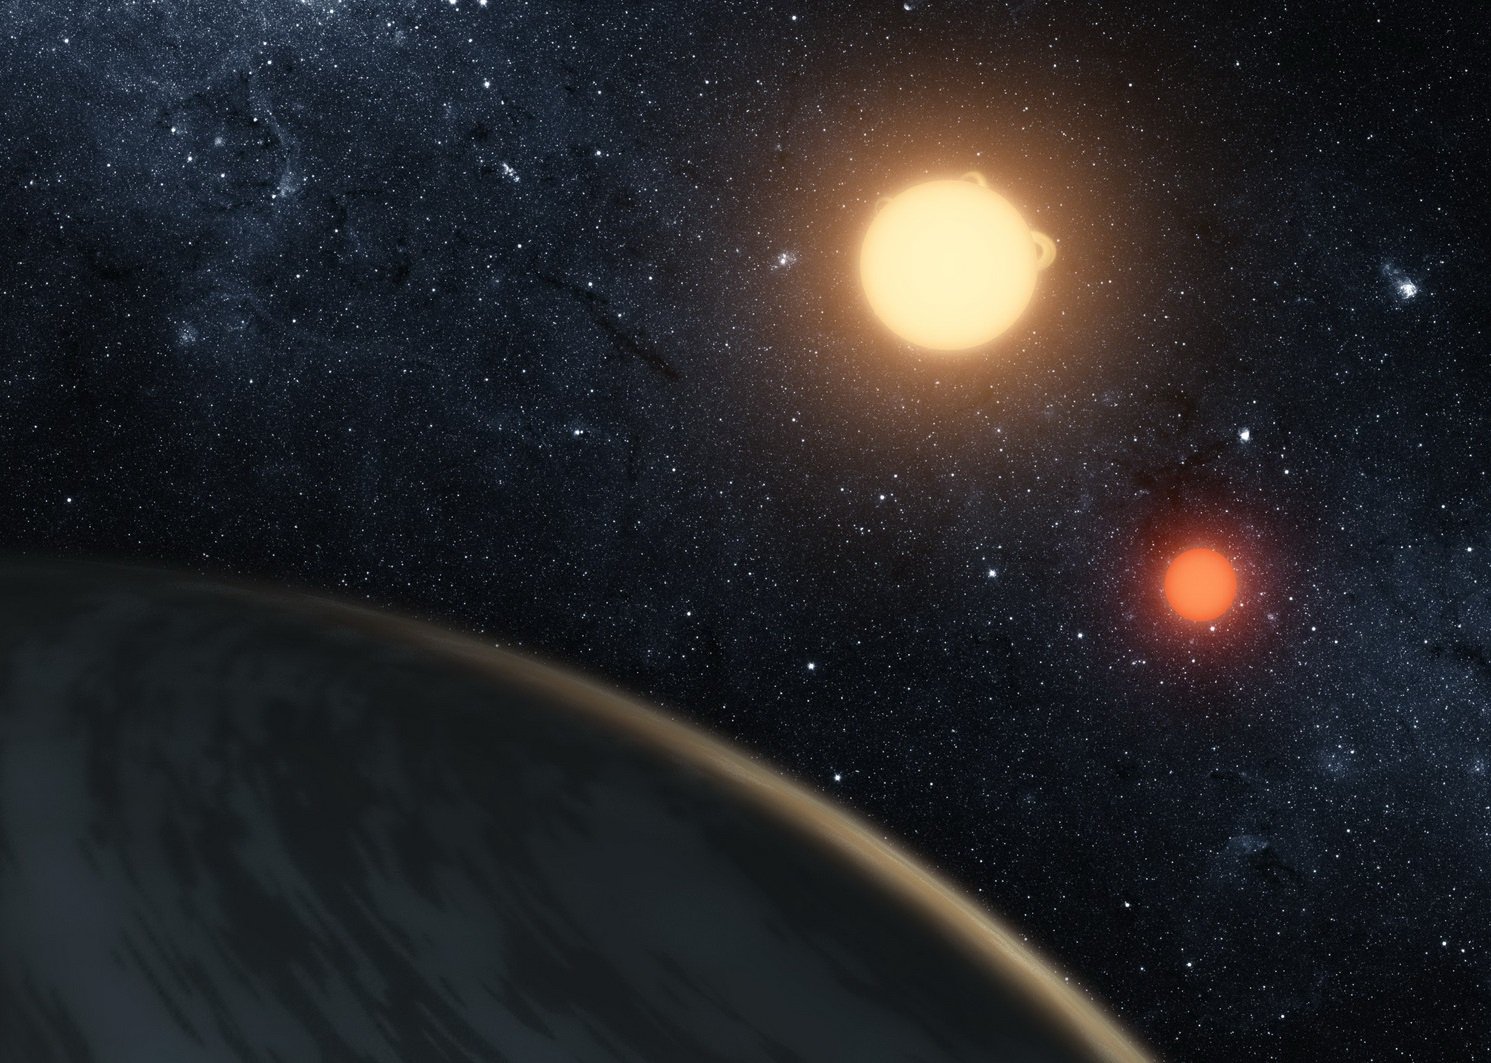 منظمة العفو الدولية قد تجاوزت علماء الفلك في الكفاءة في تحديد بقاء الكواكب الخارجية